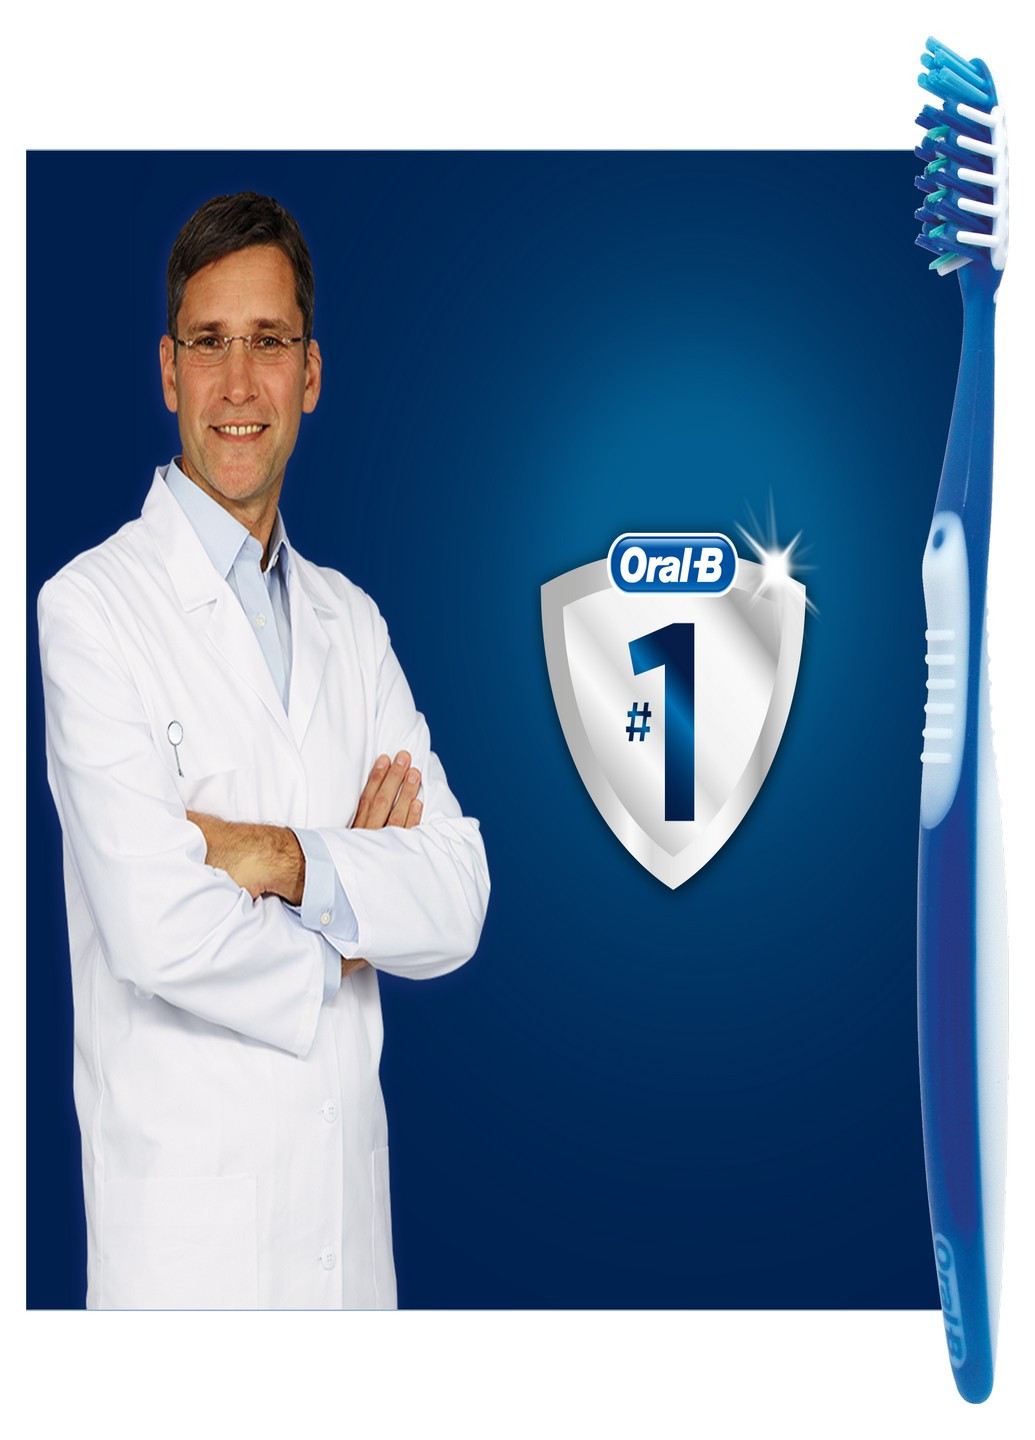 Зубная щетка Pro-Expert Все в одном 1 шт + 1 шт бесплатно Oral-B бесцветная